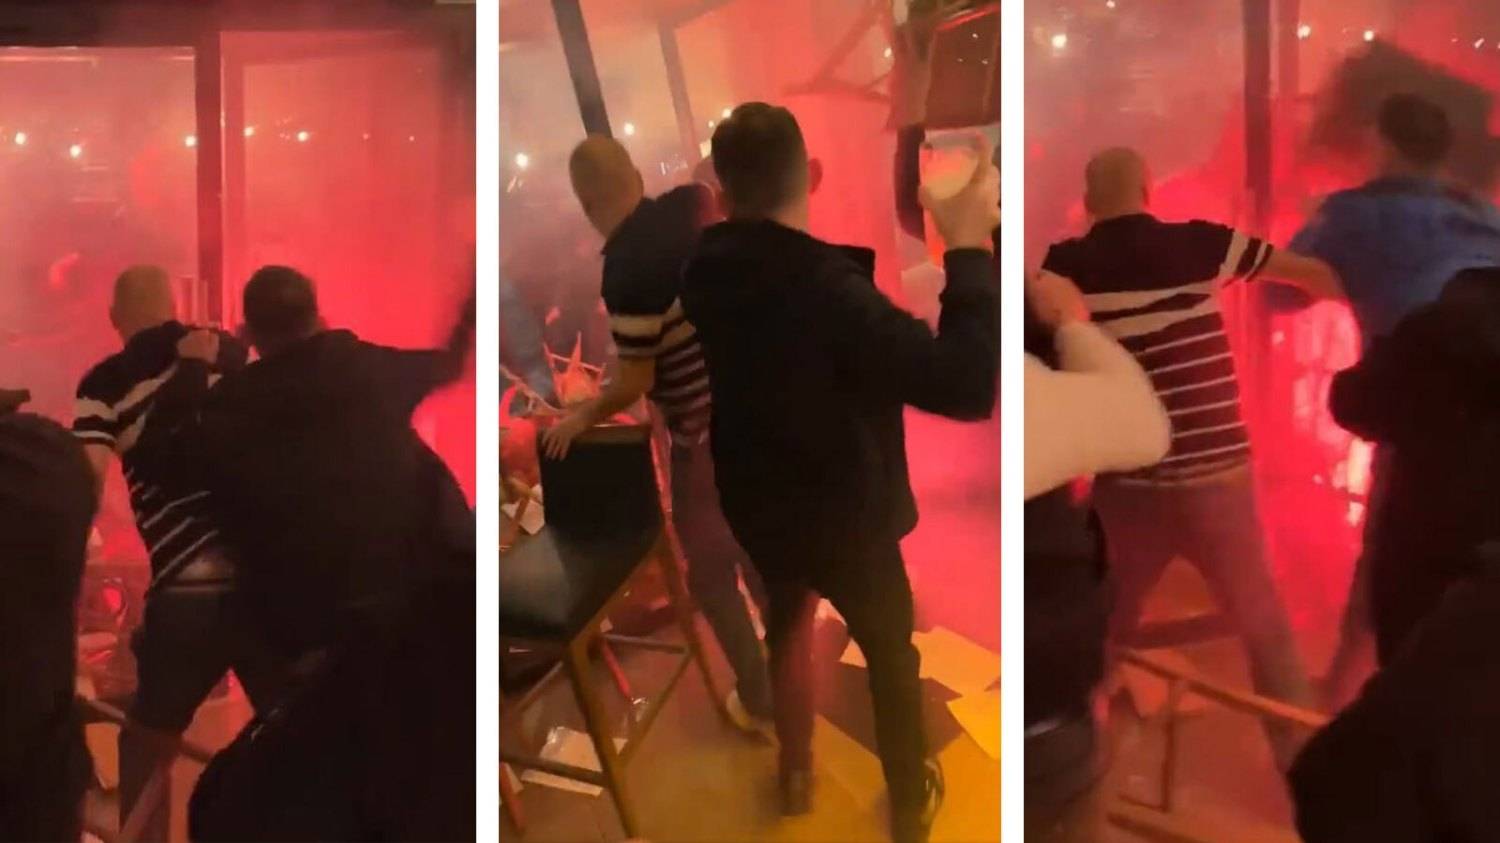 【欧冠资讯】巴黎圣日耳曼球迷暴力袭击纽卡斯尔球迷 酒吧惨遭破坏